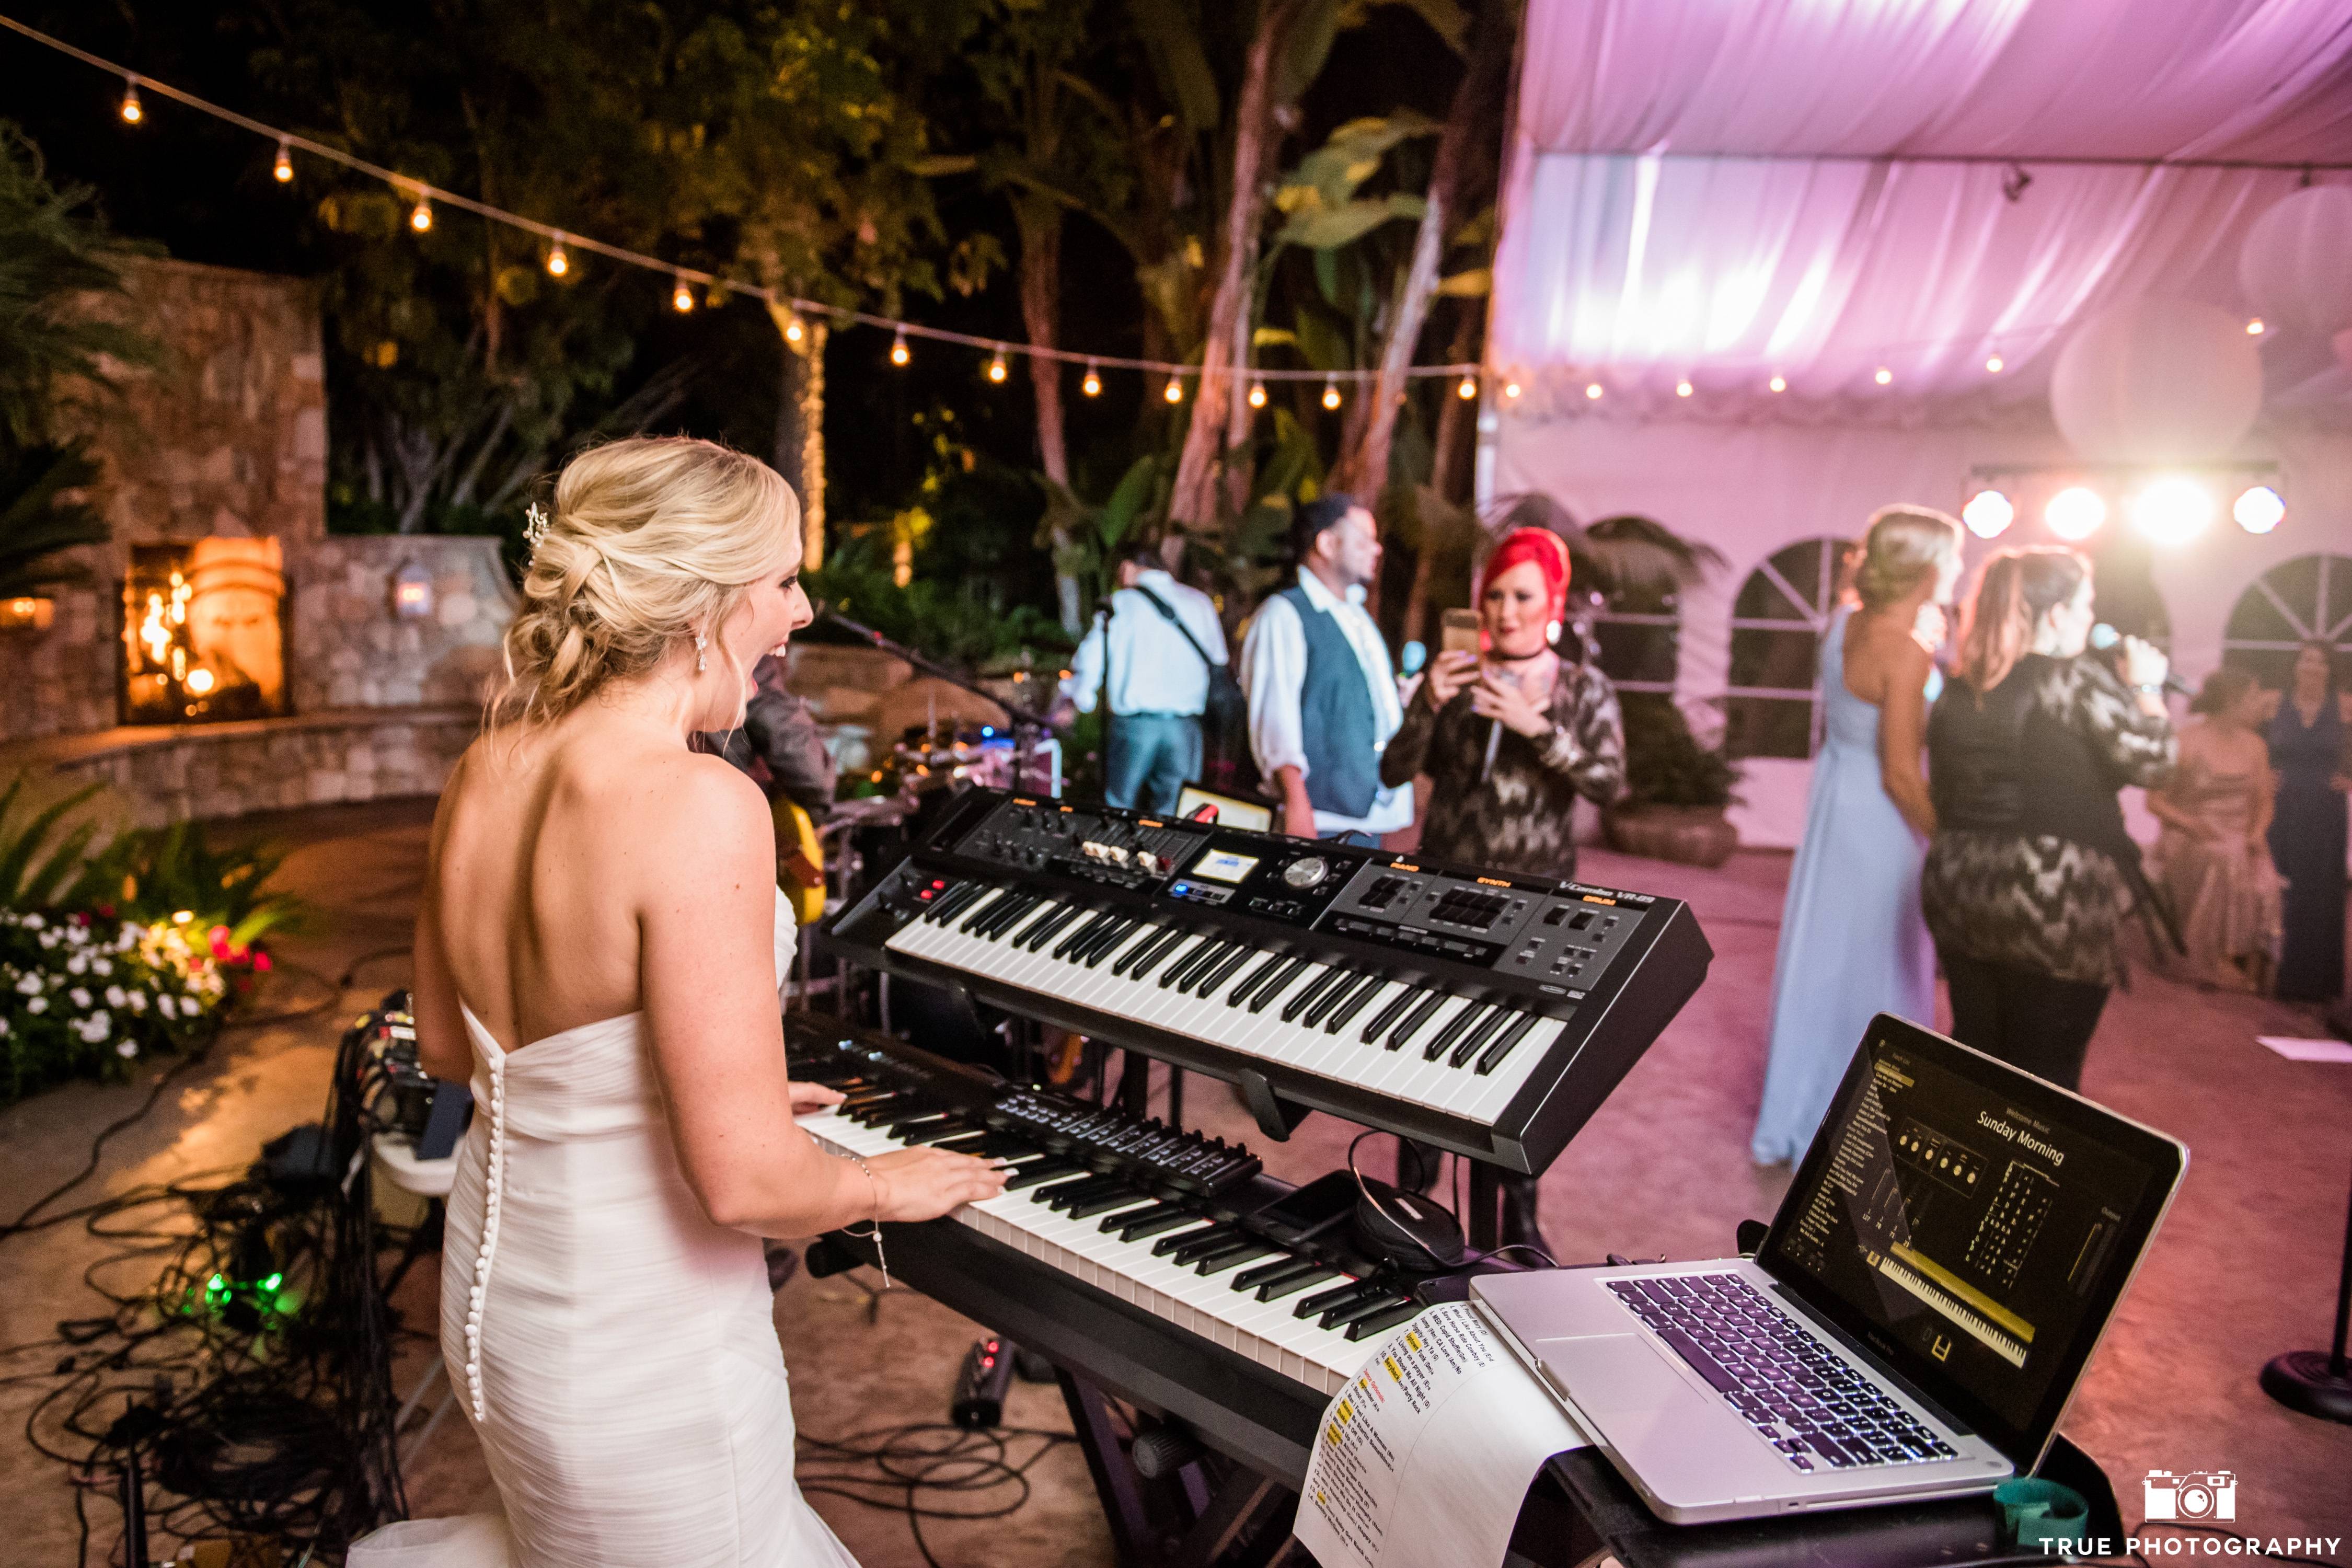 Музыка для свадьбы танцевальная — особая часть праздника. подбор правильных и подходящих композиций для конкретного этапа торжества